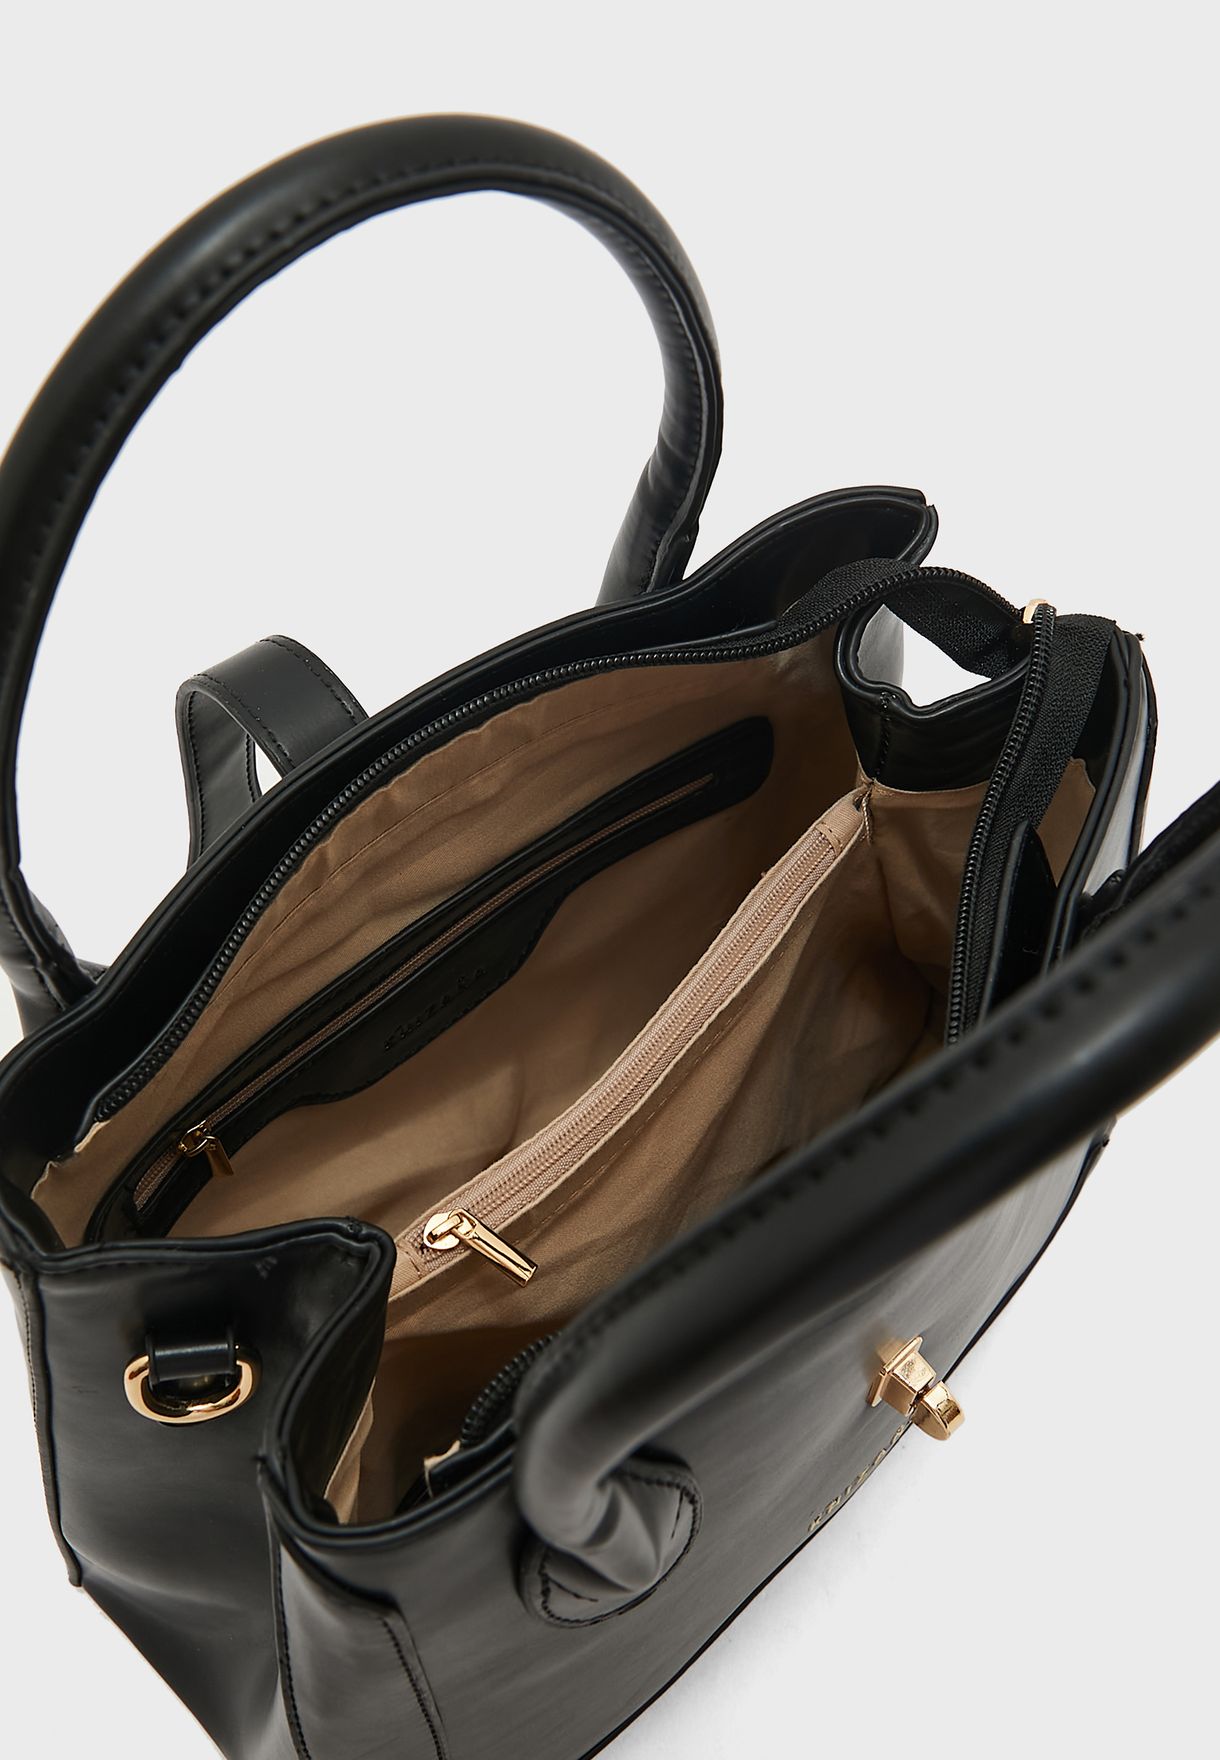 Tote Handbag With Clasp